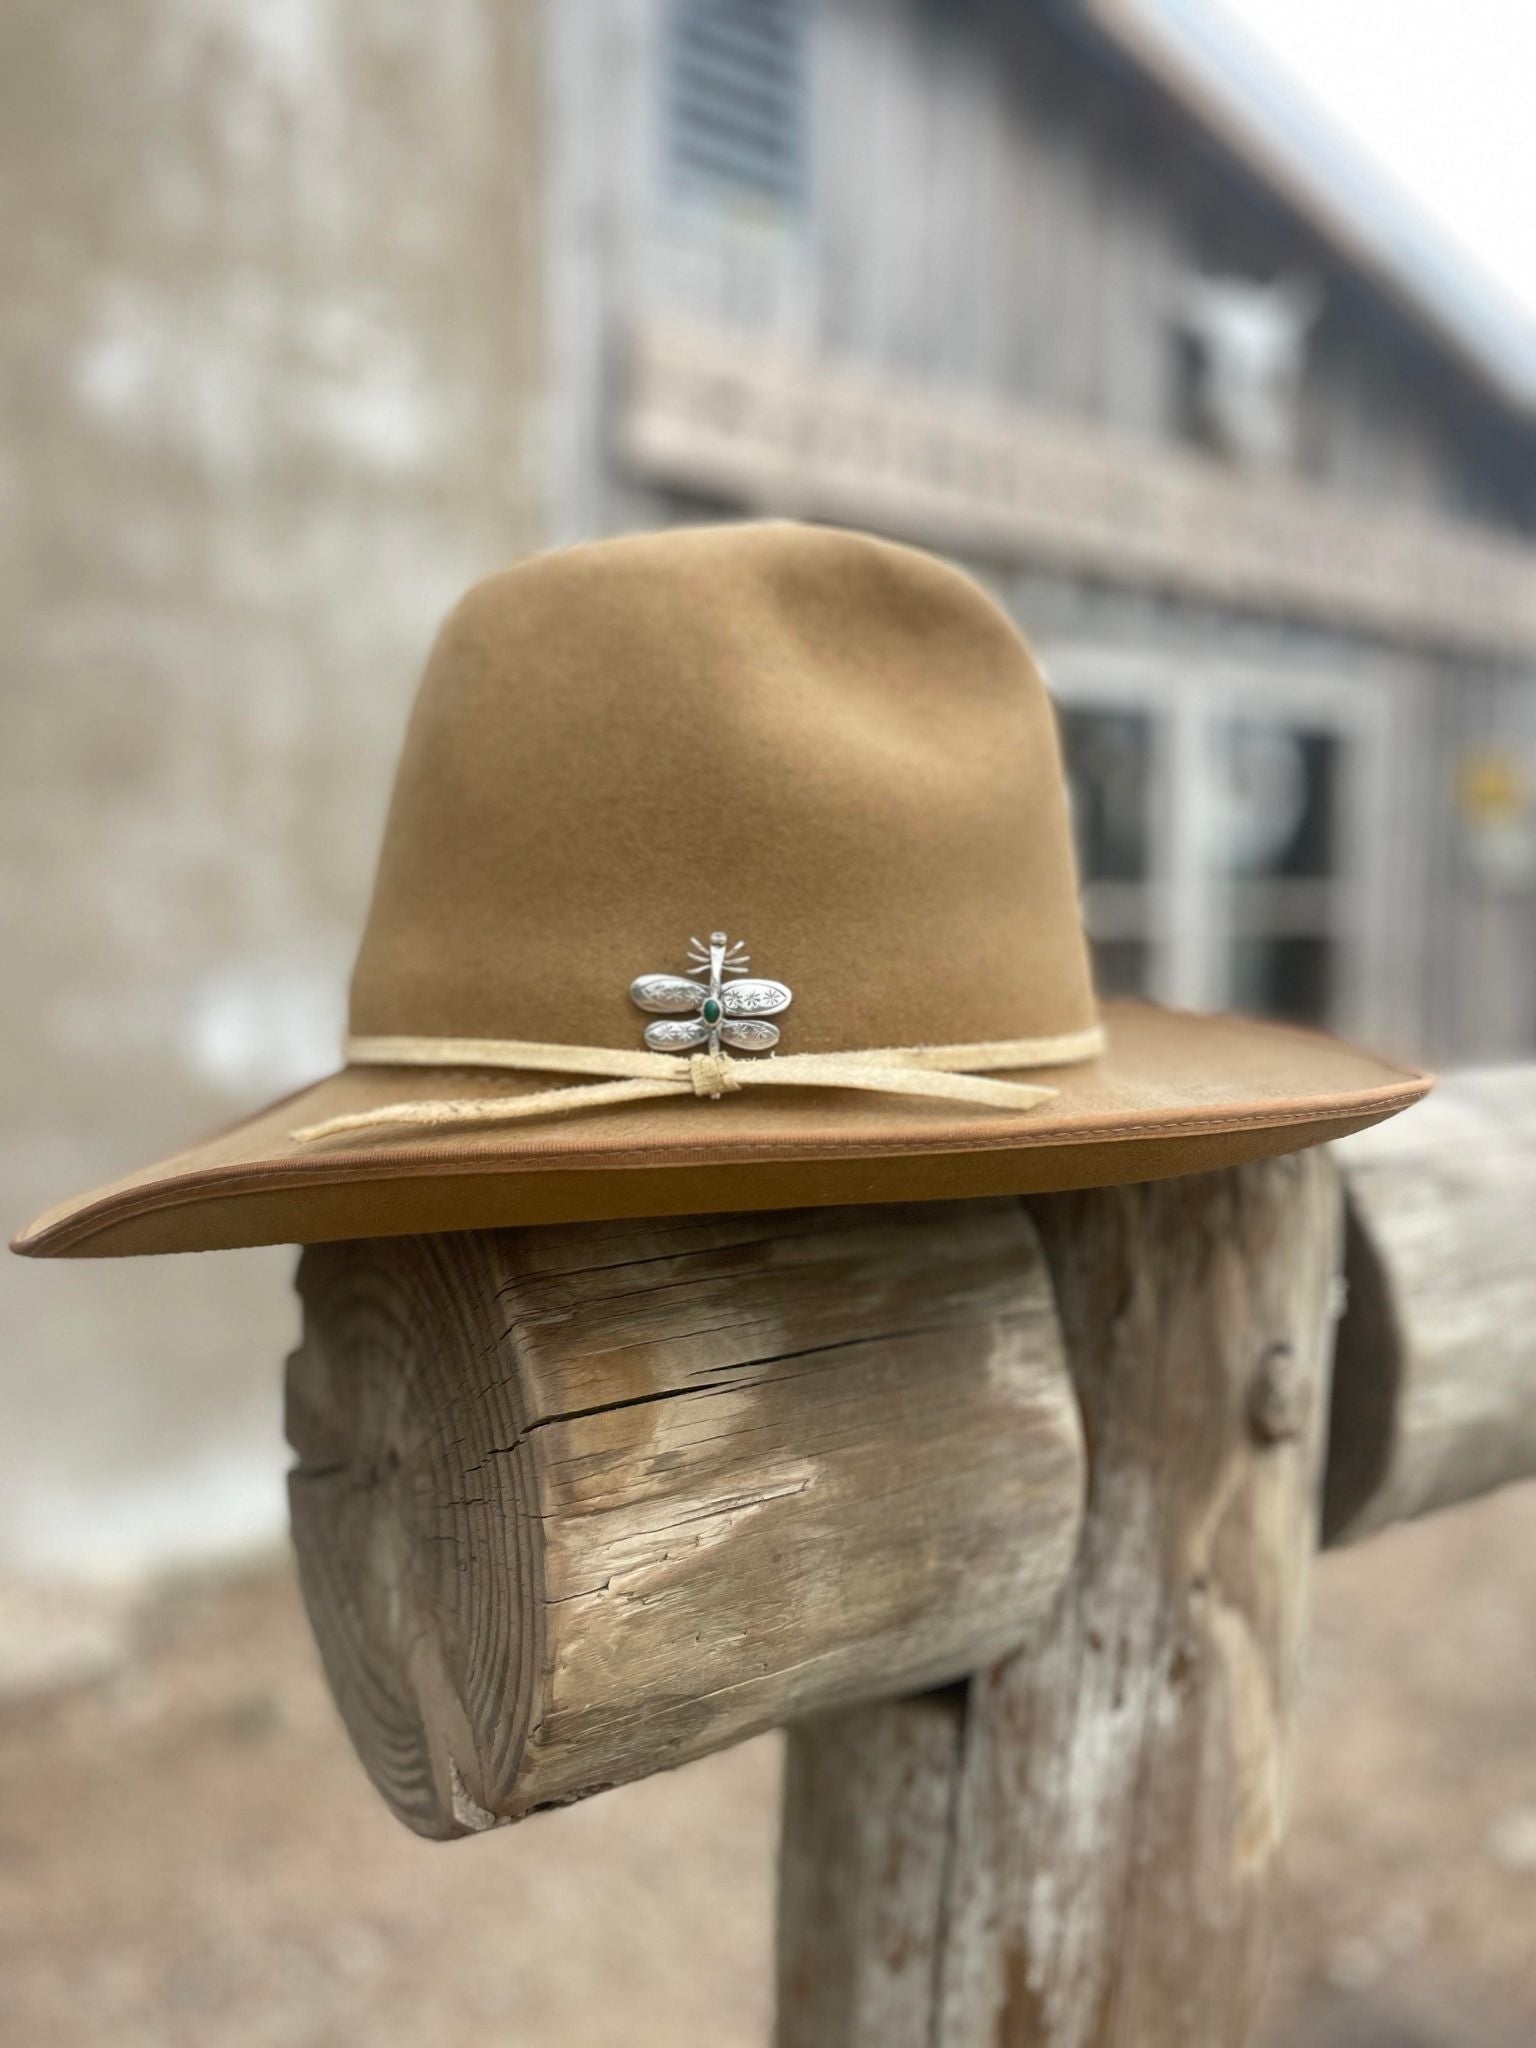 Santa Fe Outdoor Hat